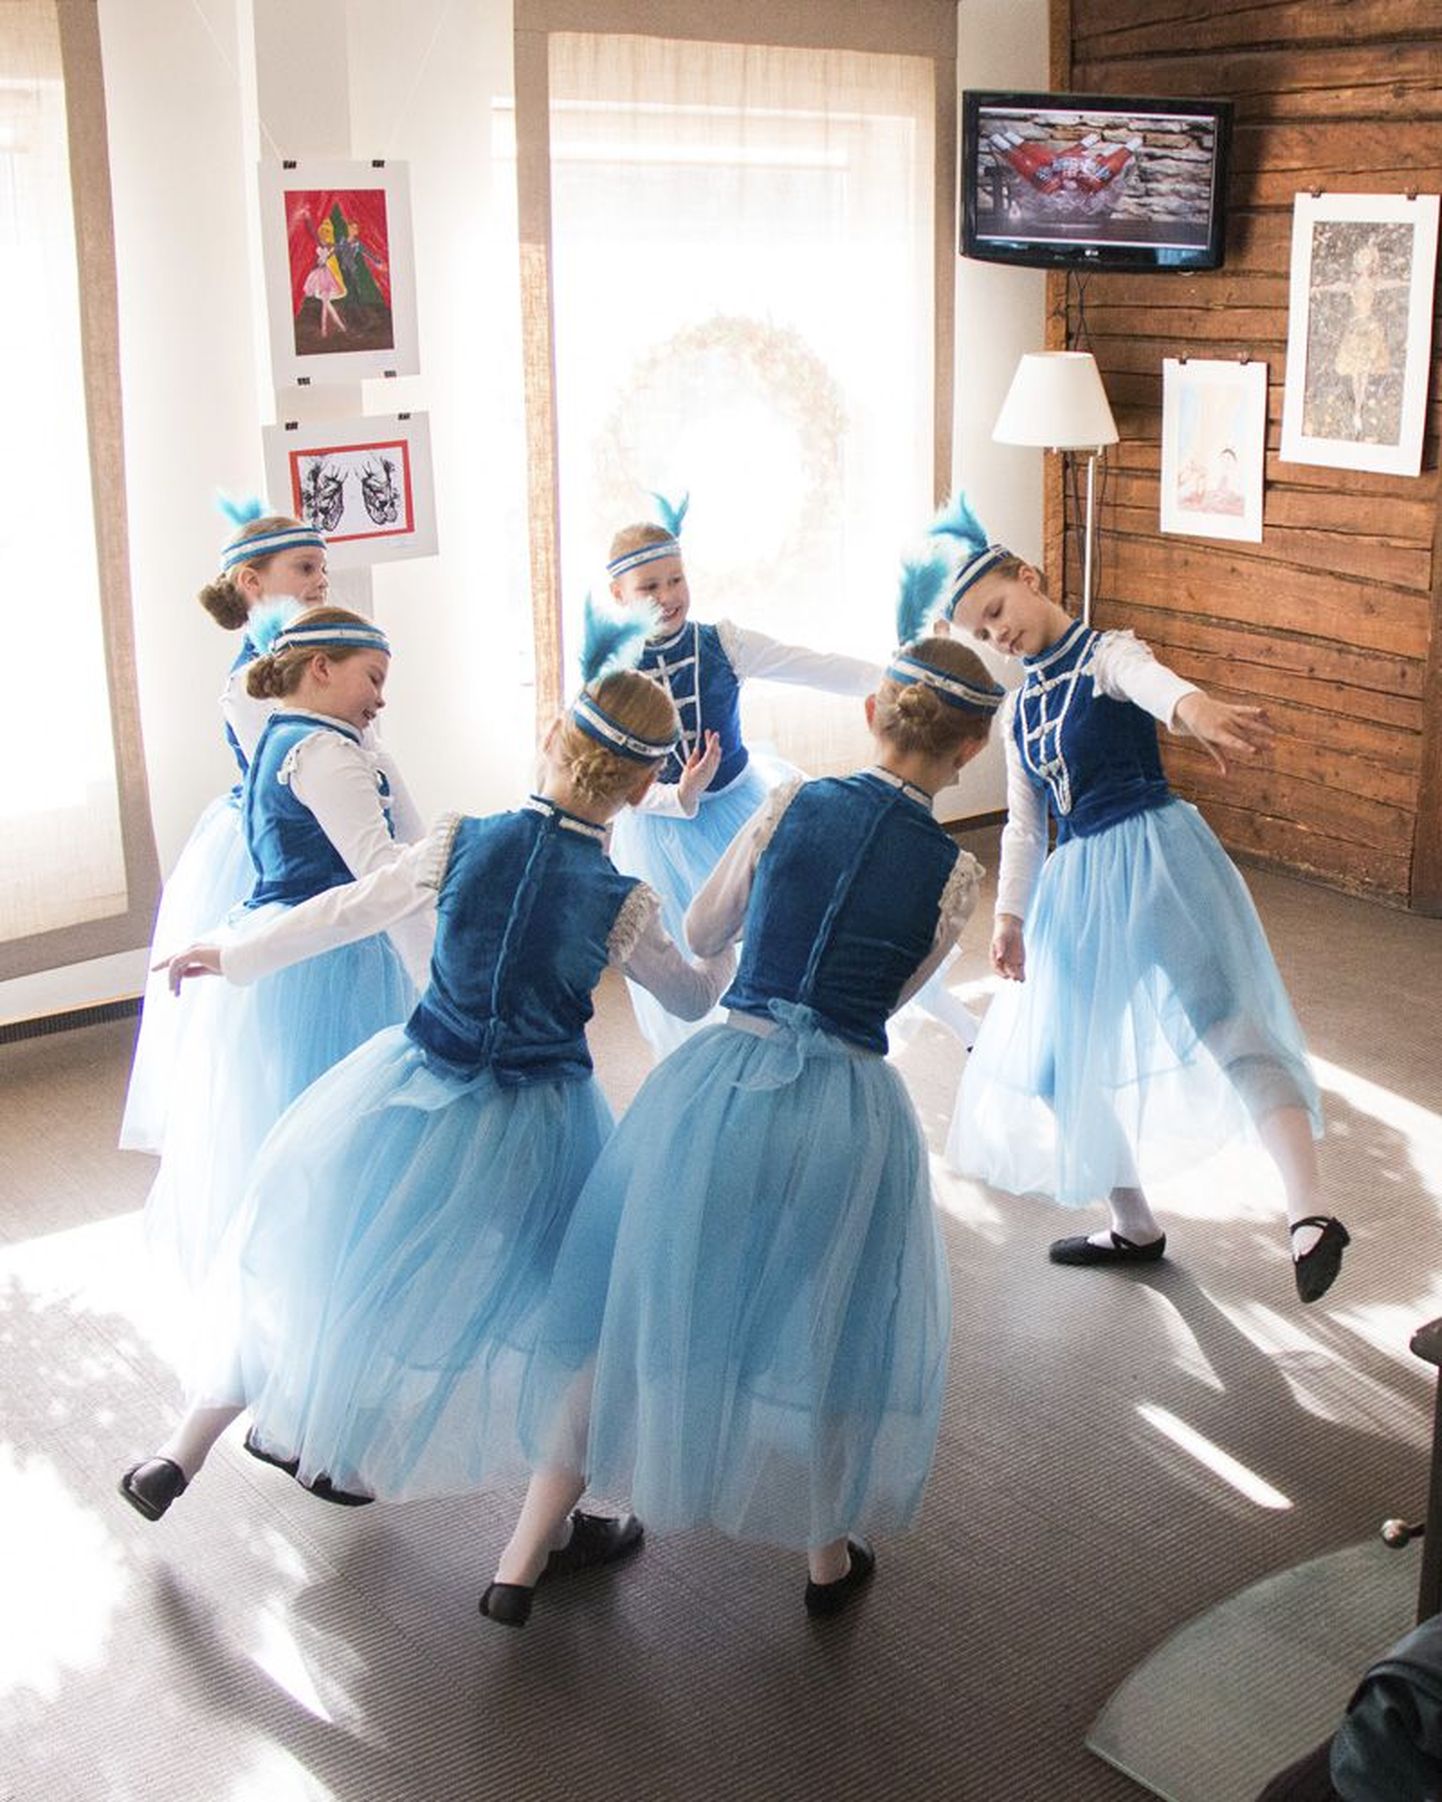 Kaurikooli balletilapsed esitasid näituse "Minu ballett" ning Rakveres ja Jõhvis toimuva balletifestivali avamisel masurka Pjotr Tšaikovski balletist "Luikede järv".